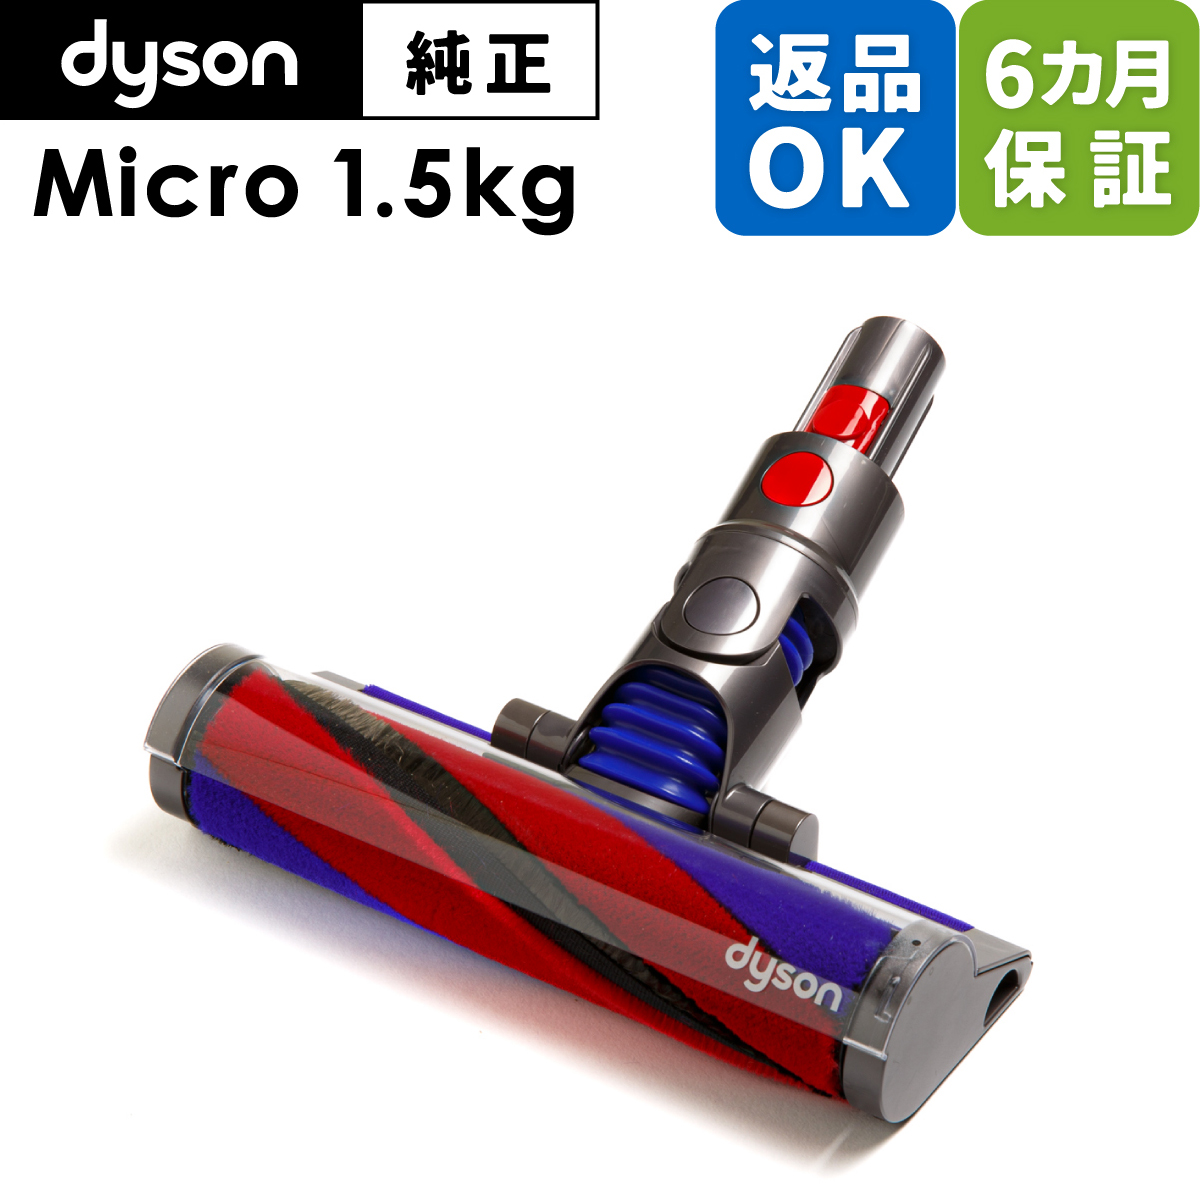 Dyson ダイソン 掃除機 純正 パーツ 返品OK マイクロフラフィソフトローラー マイクロフラフィクリーナーヘッド Micro 1.5kg 適合  SV21 モデル 部品 交換